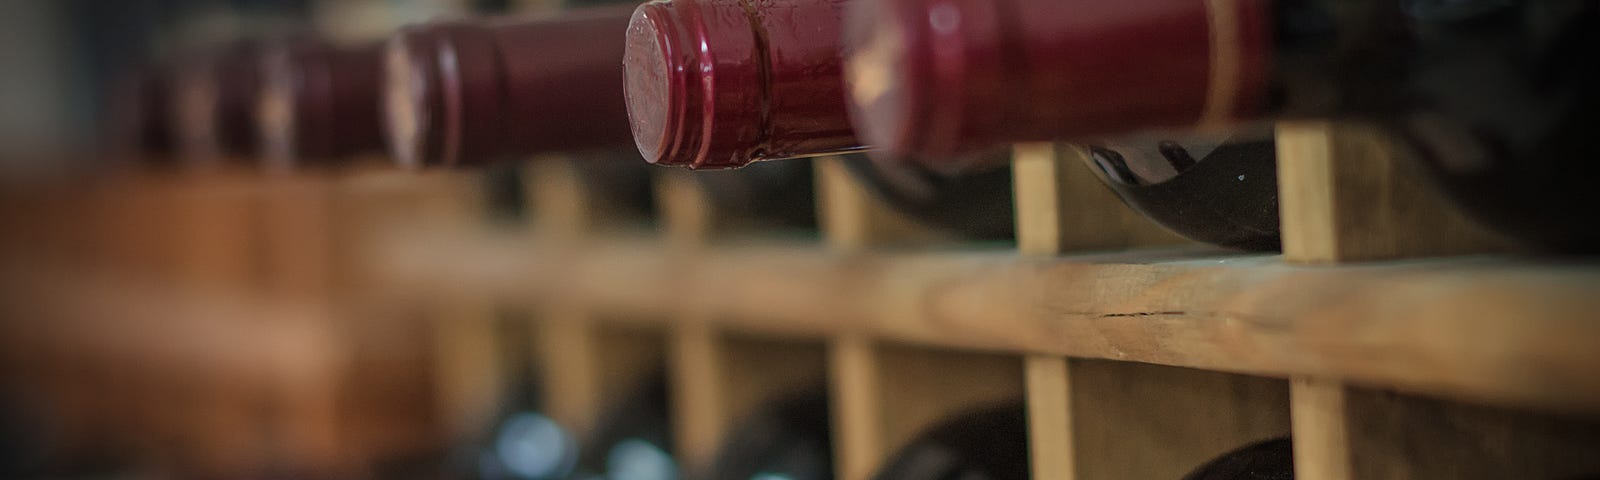 Red wine bottles on wooden racks